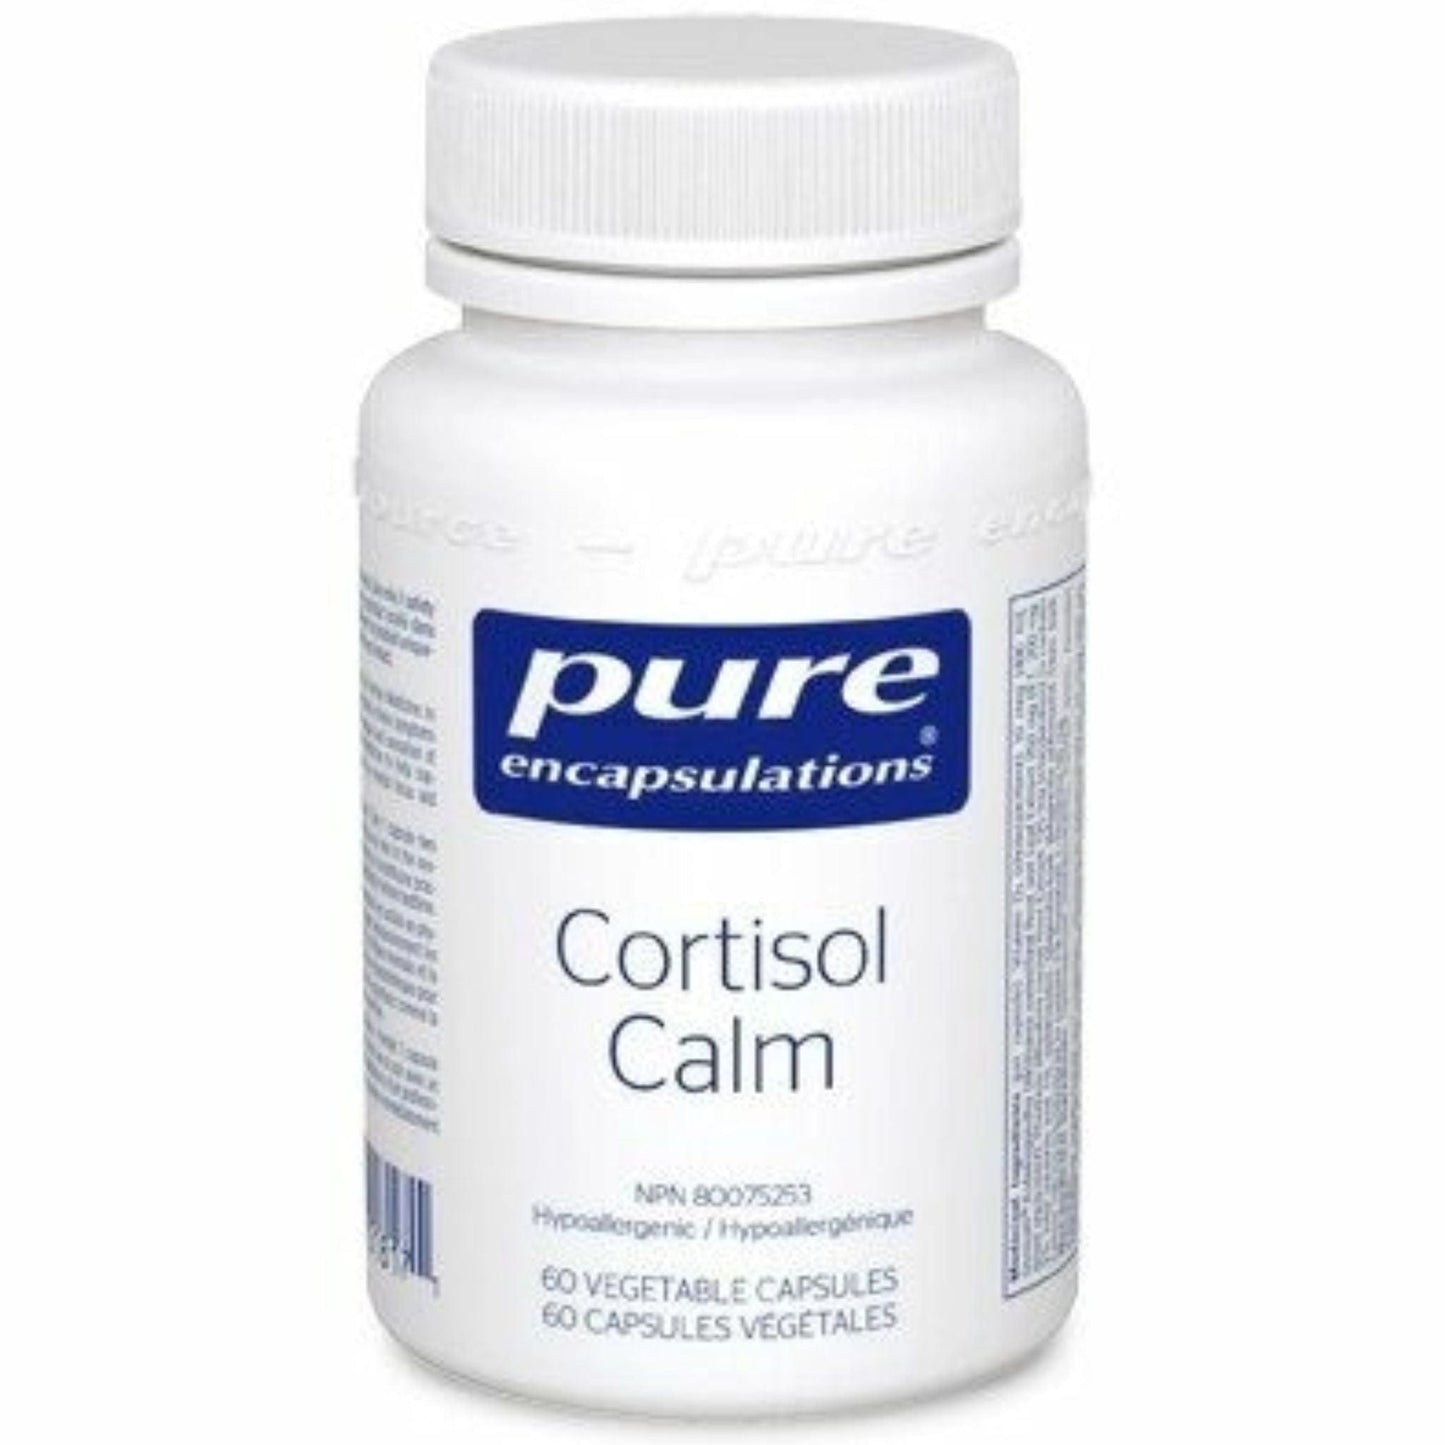 pure-encapsulations-cortisol-calm-60-caps